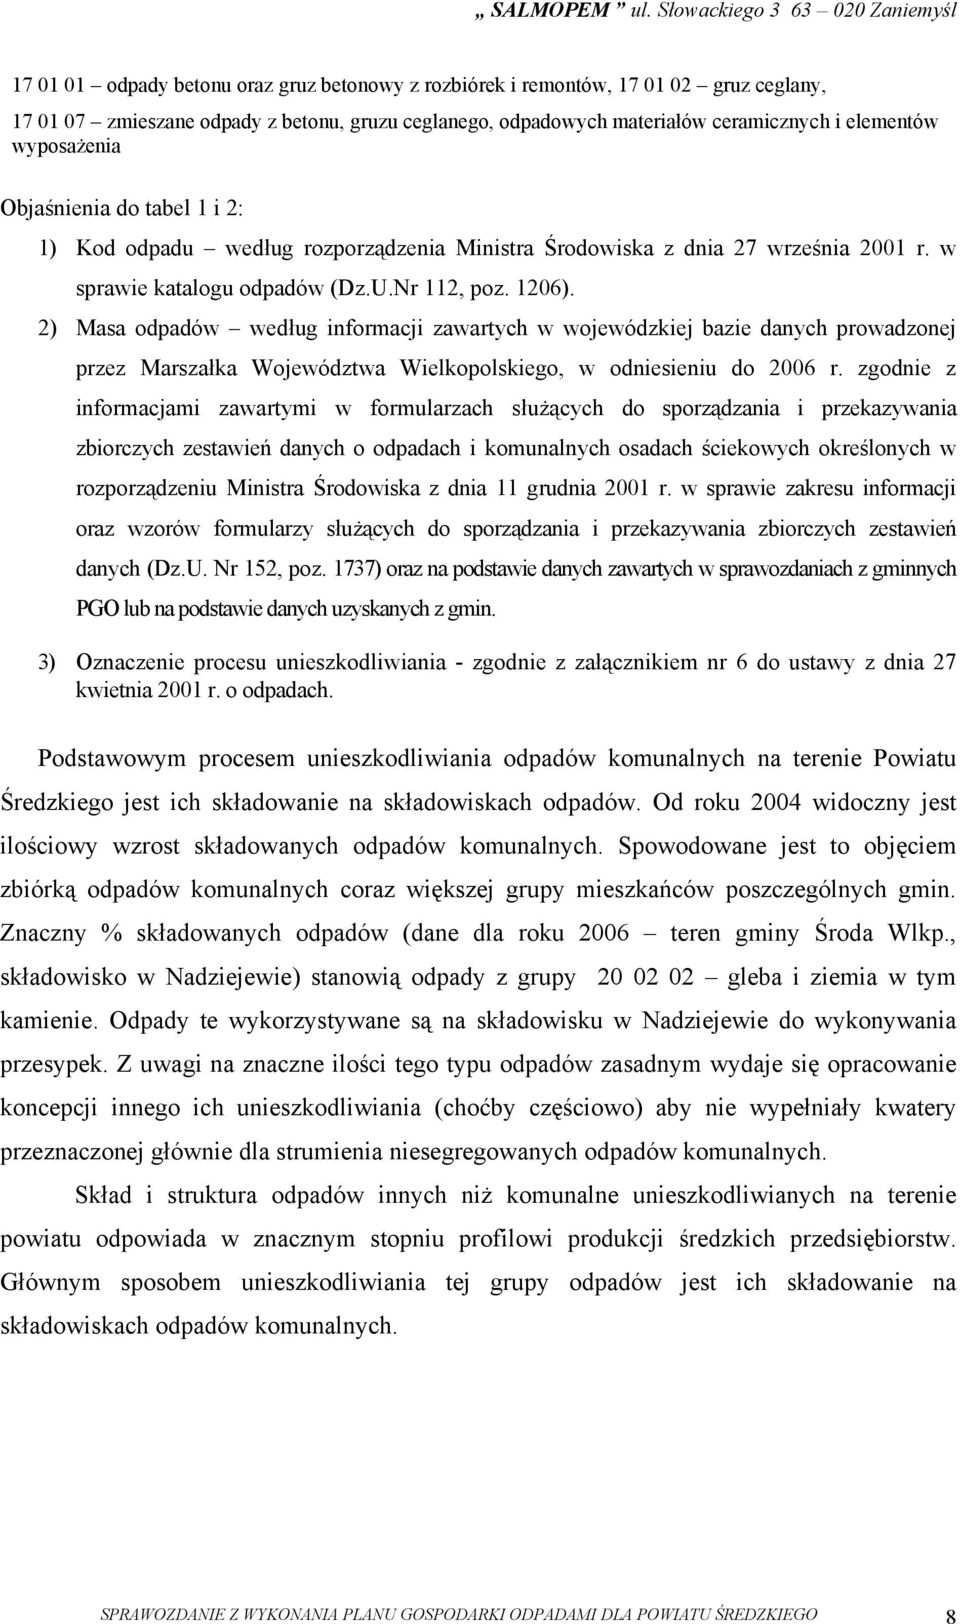 2) Masa według informacji zawartych w wojewódzkiej bazie danych prowadzonej przez Marszałka Województwa Wielkopolskiego, w odniesieniu do 2006 r.